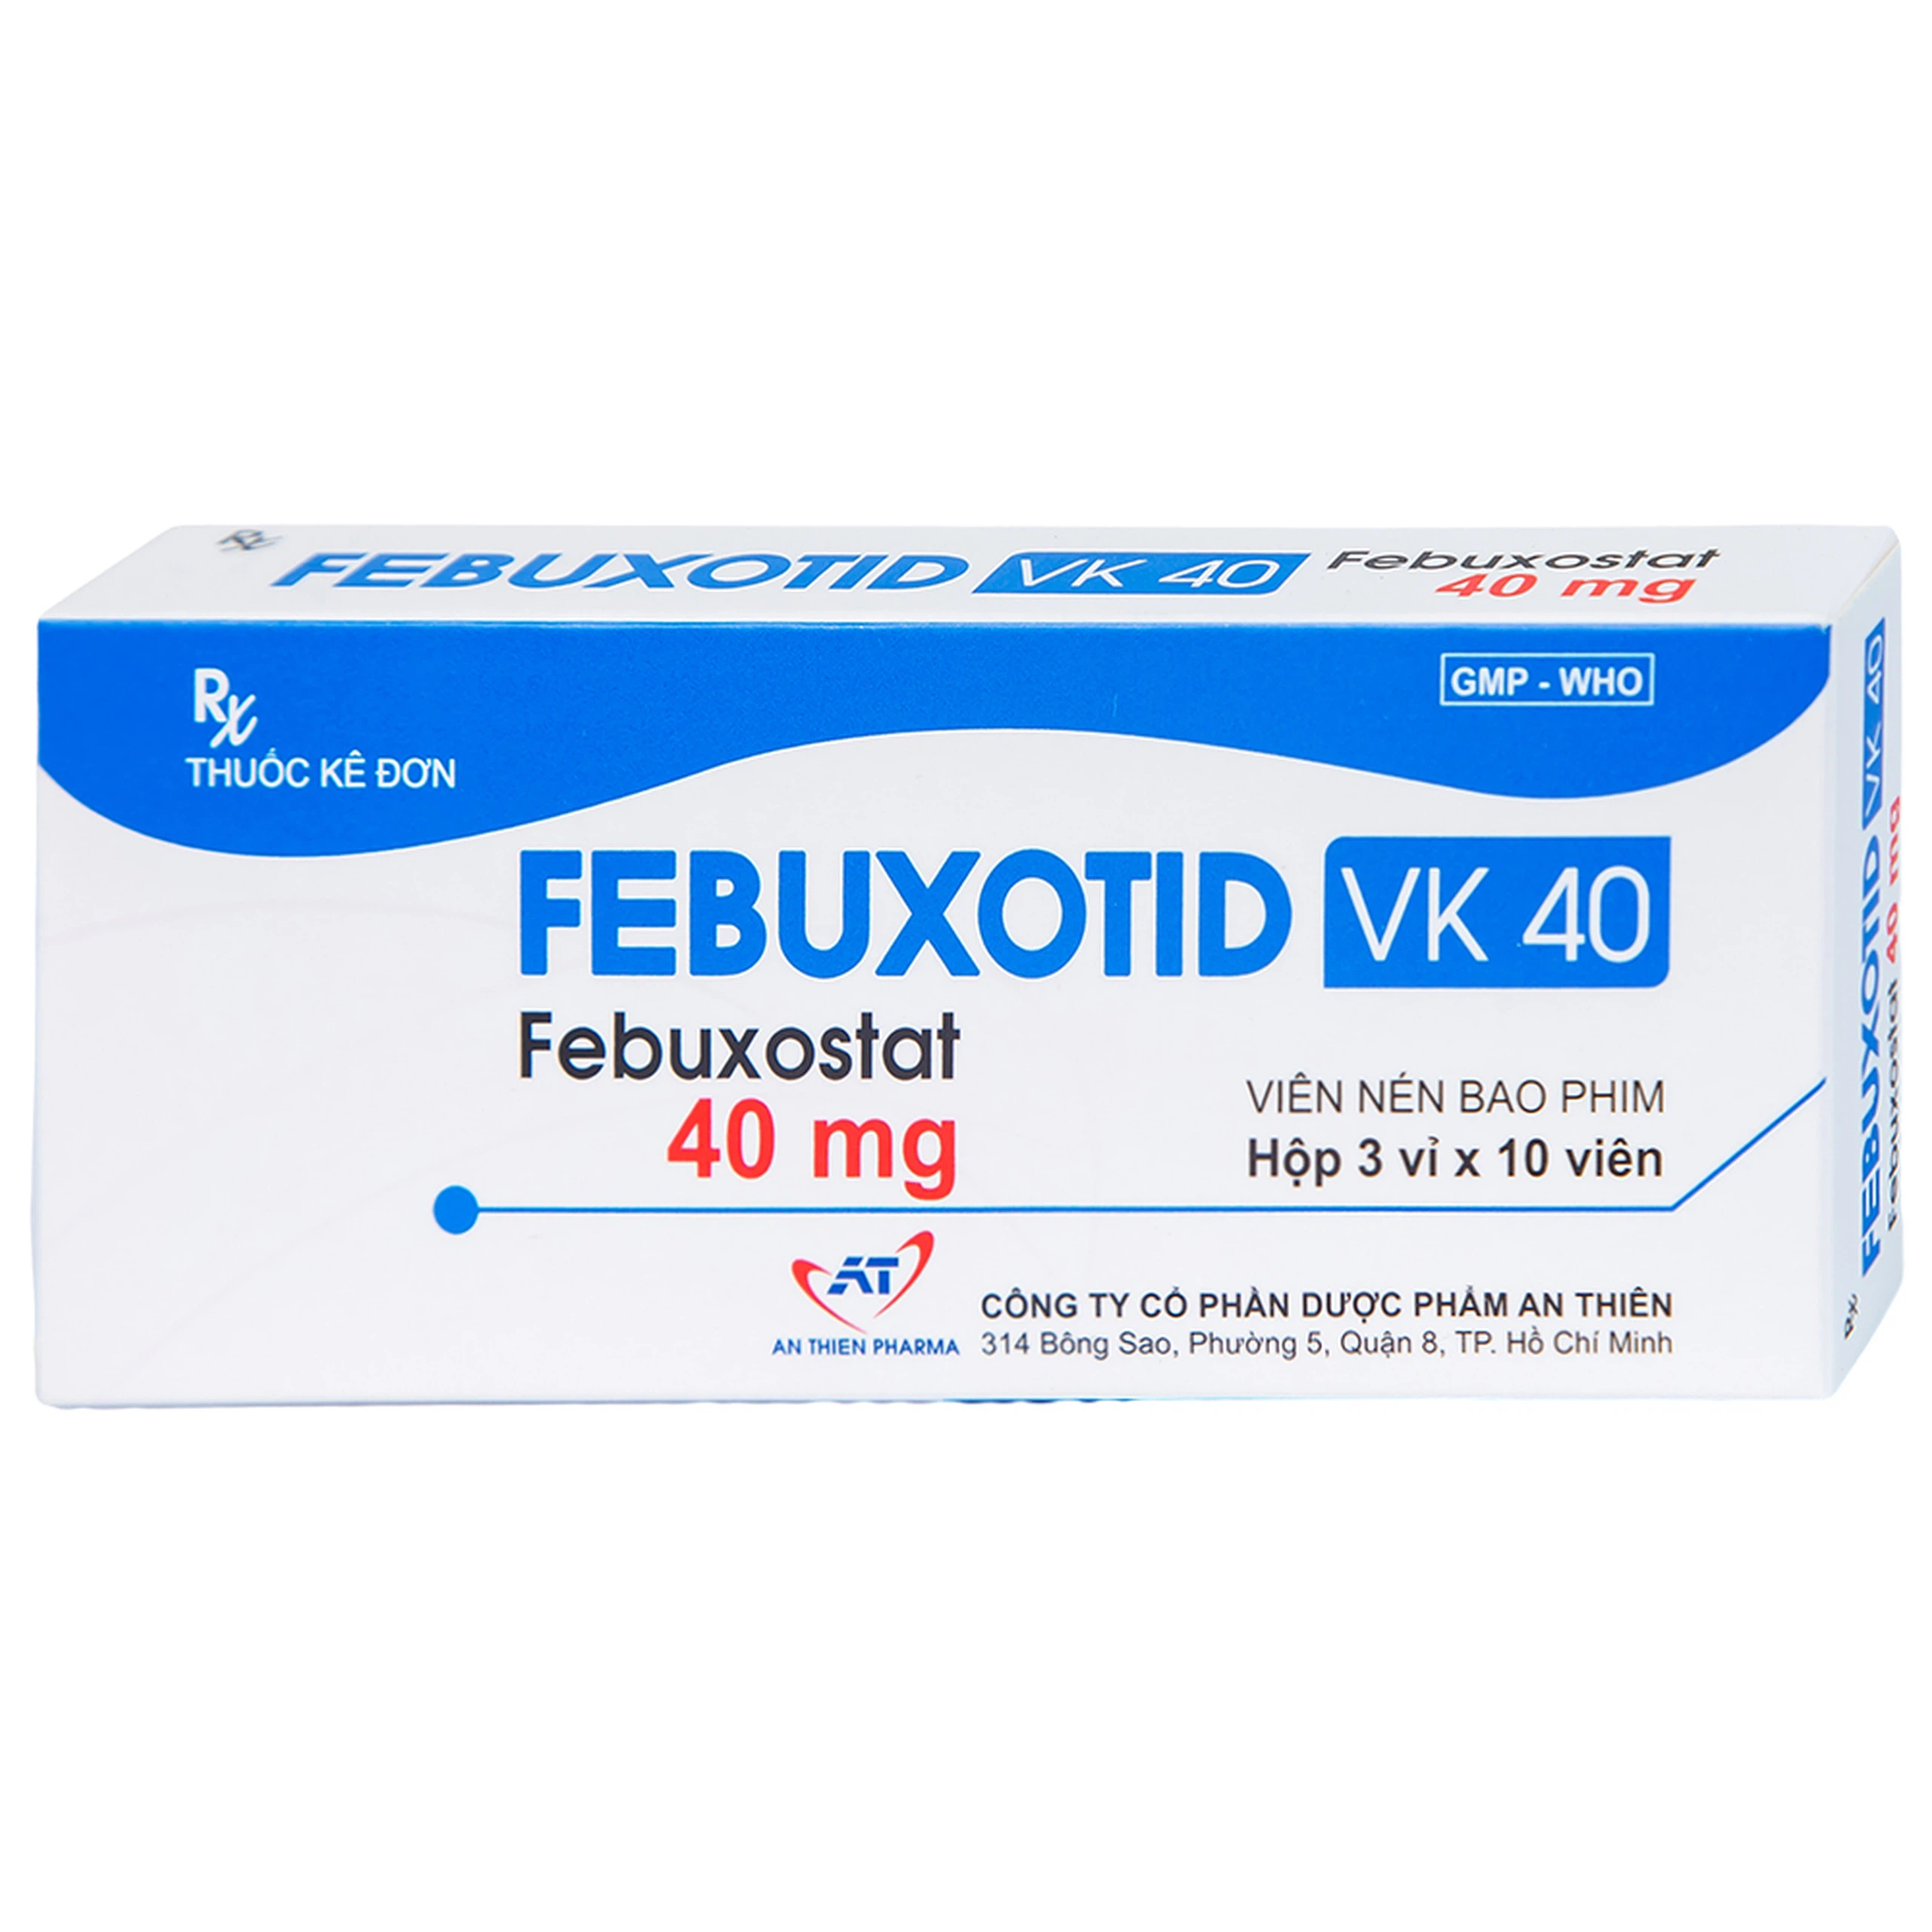 Thuốc Febuxotid VK 40 An Thiên điều trị tăng acid uric máu mãn tính (3 vỉ x 10 viên)